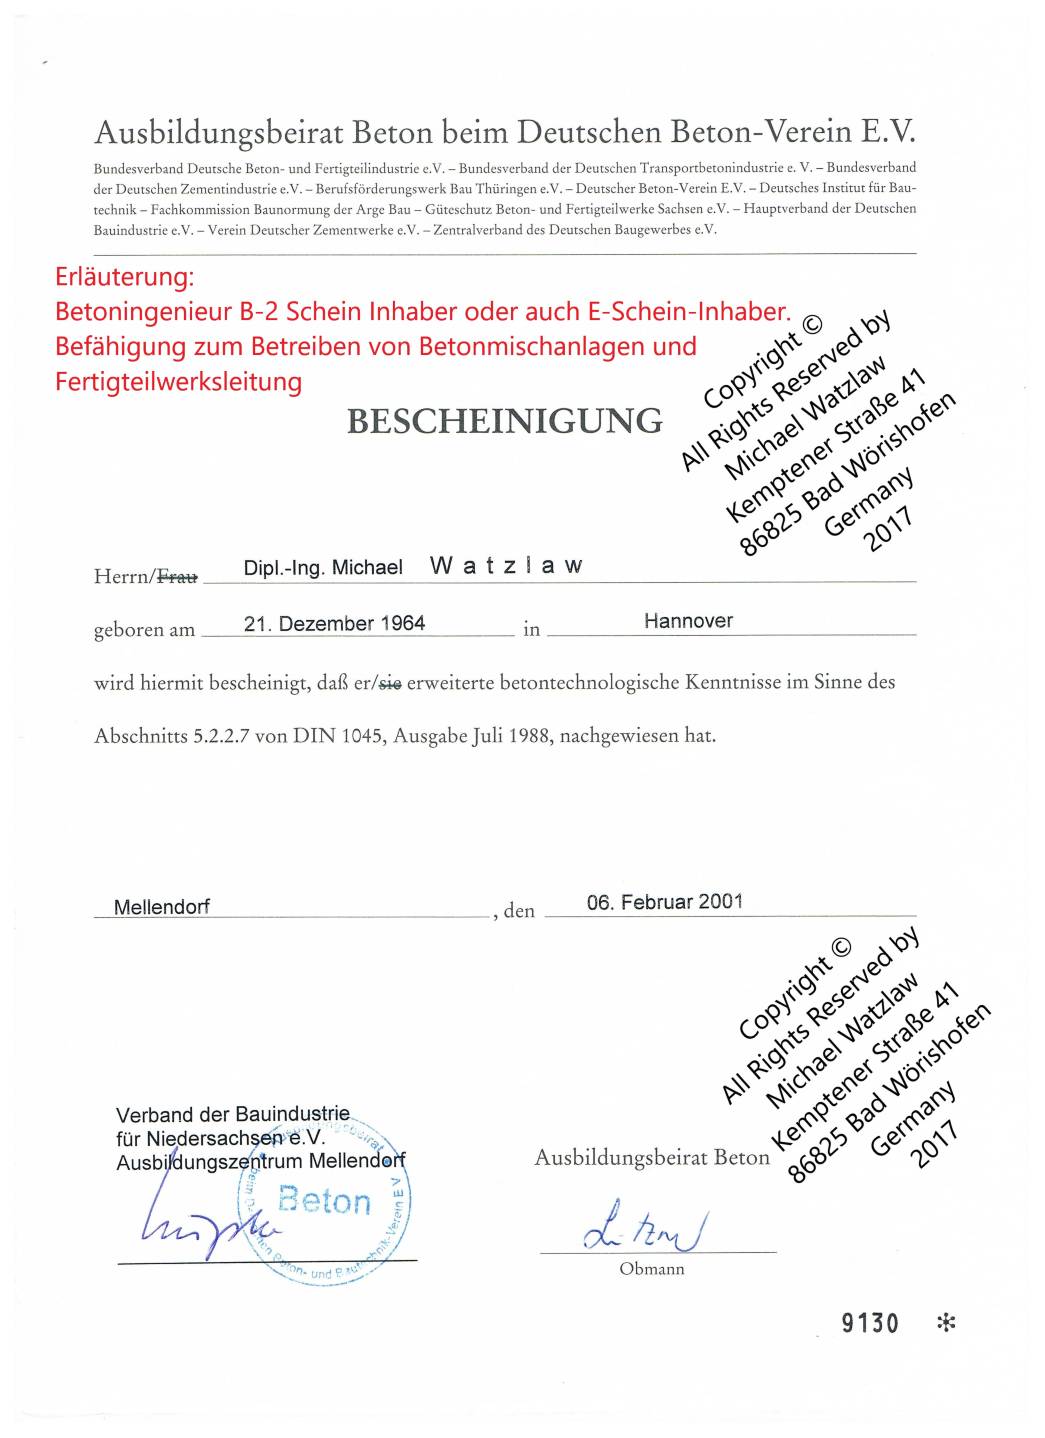 Referenz Ausbildungsbeirat Beton beim Deutschen Beton-Verein E.V.